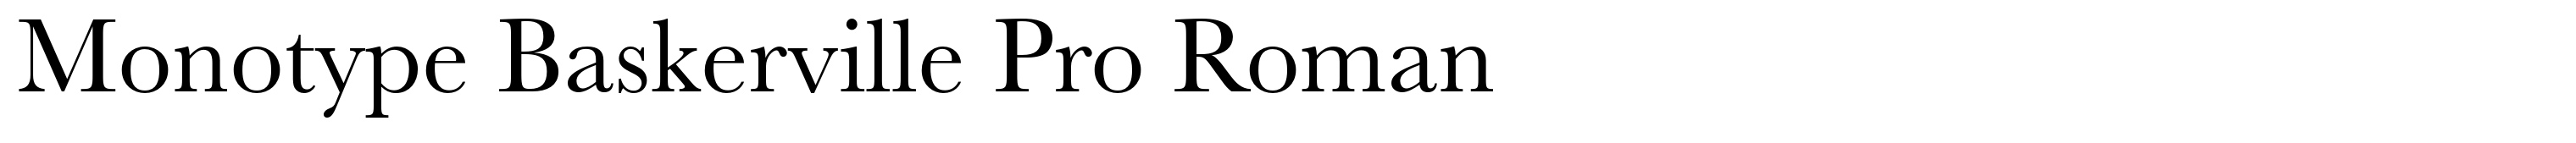 Monotype Baskerville Pro Roman